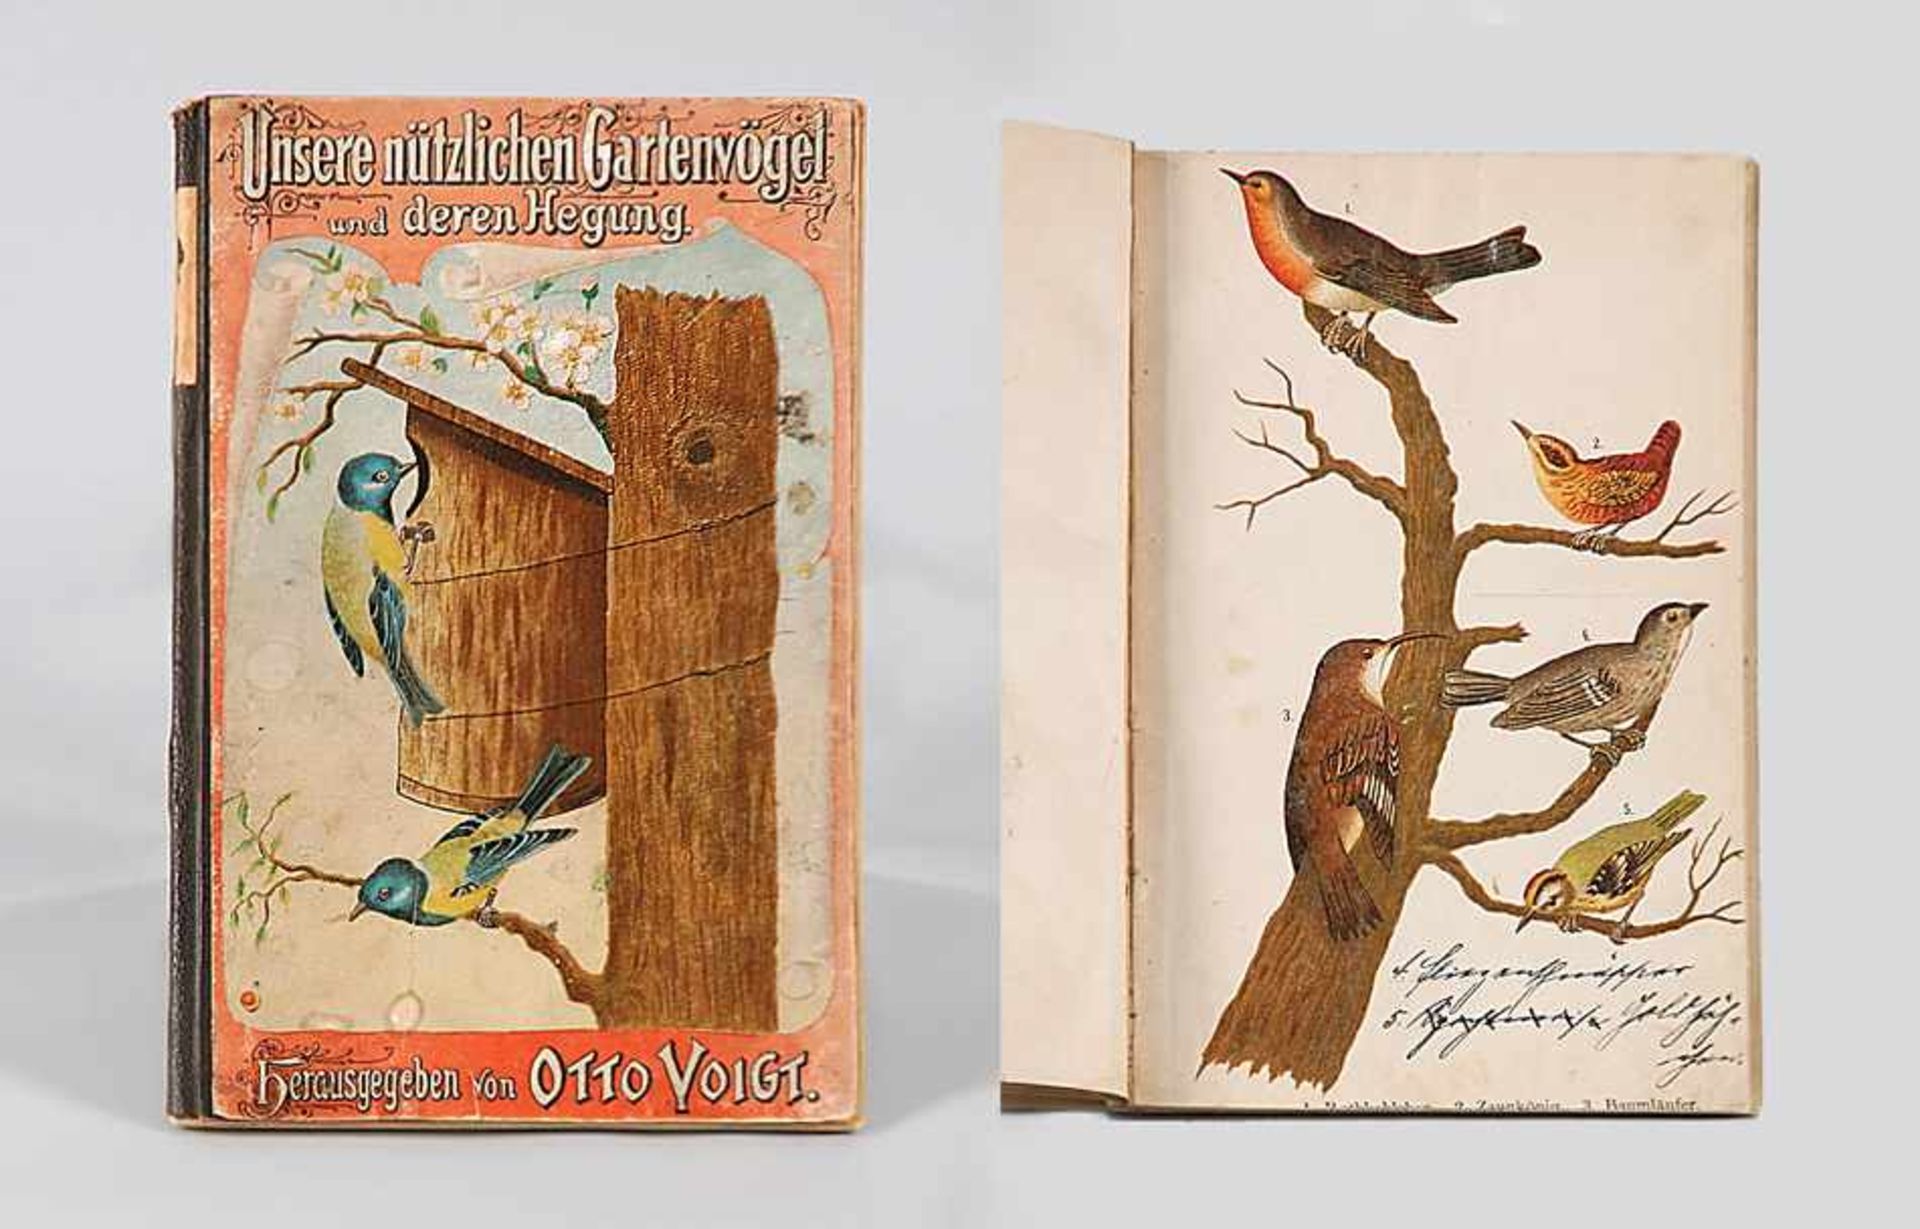 Voigt, OttoUnsere nützlichen Gartenvögel und deren Hegung. Verlag Th. Voigt, Gernrode um 1897.o. L.